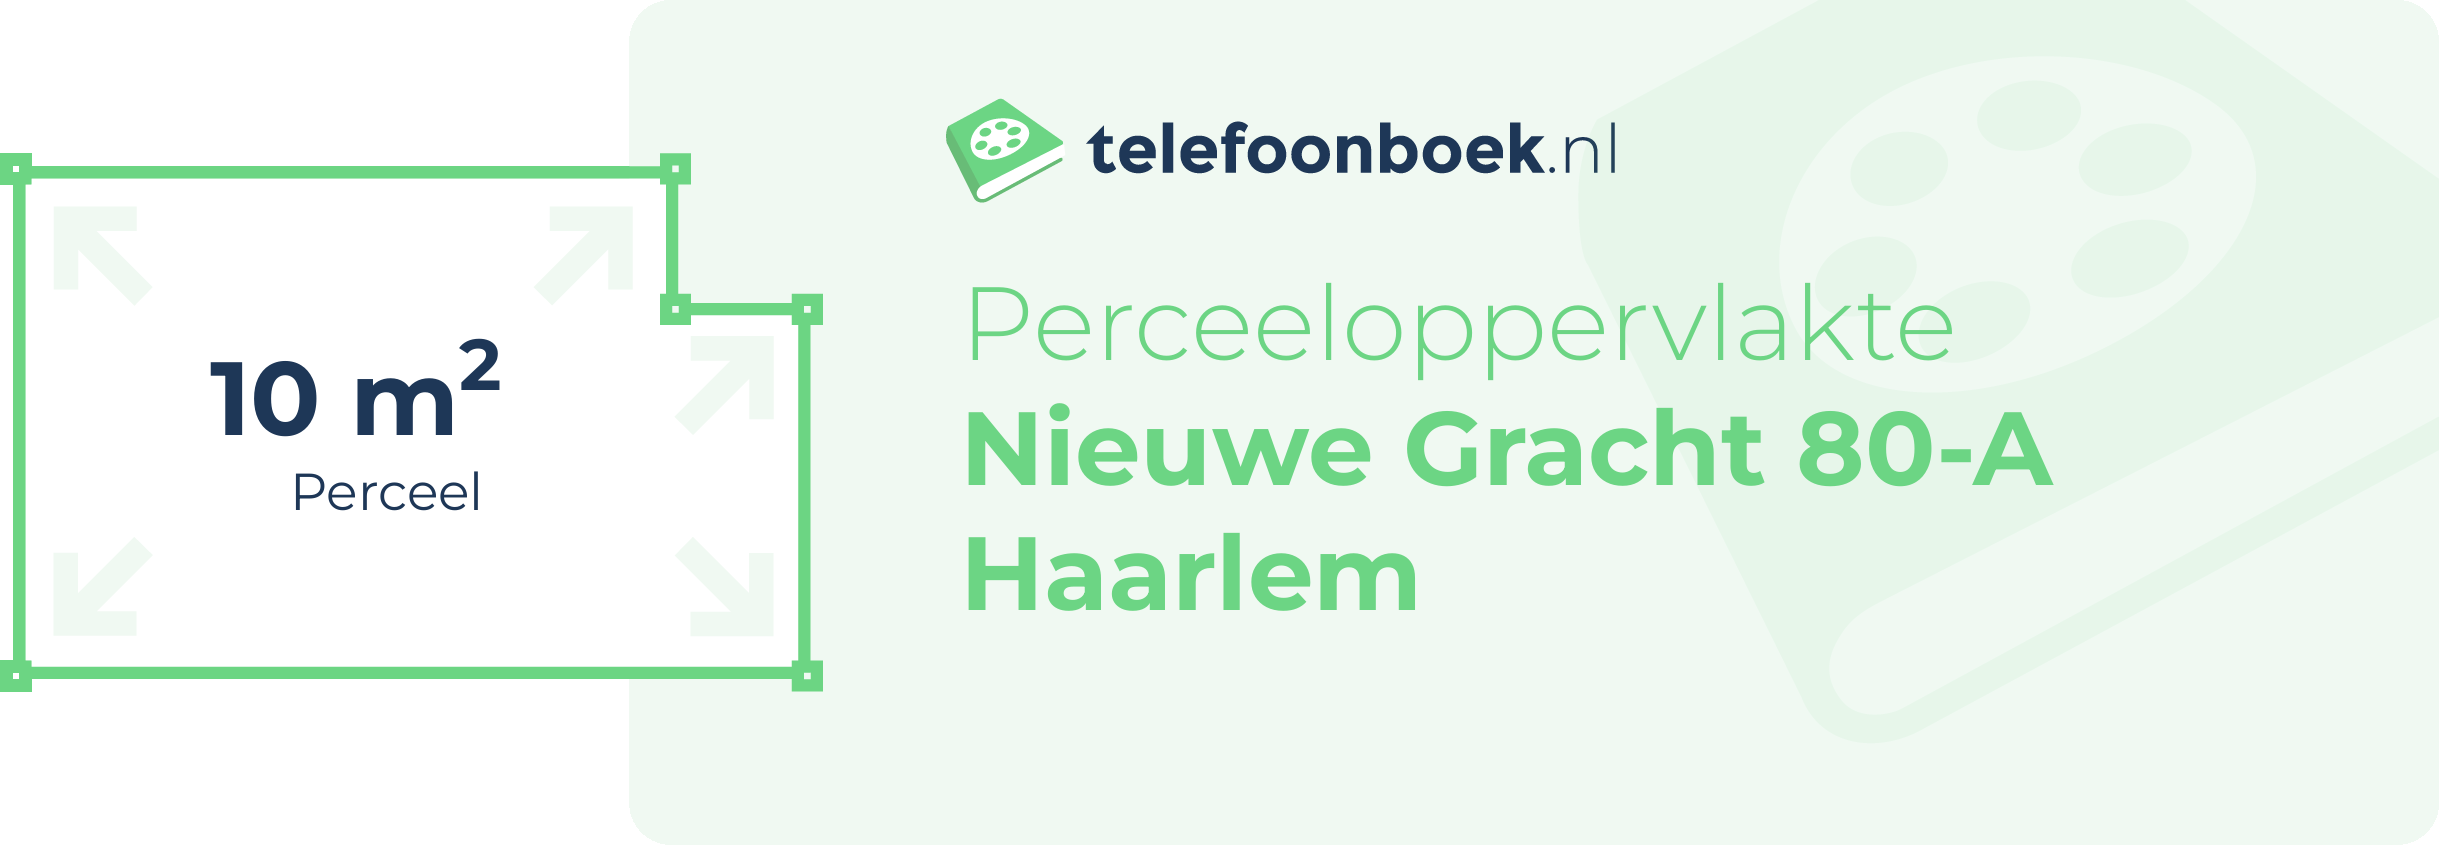 Perceeloppervlakte Nieuwe Gracht 80-A Haarlem